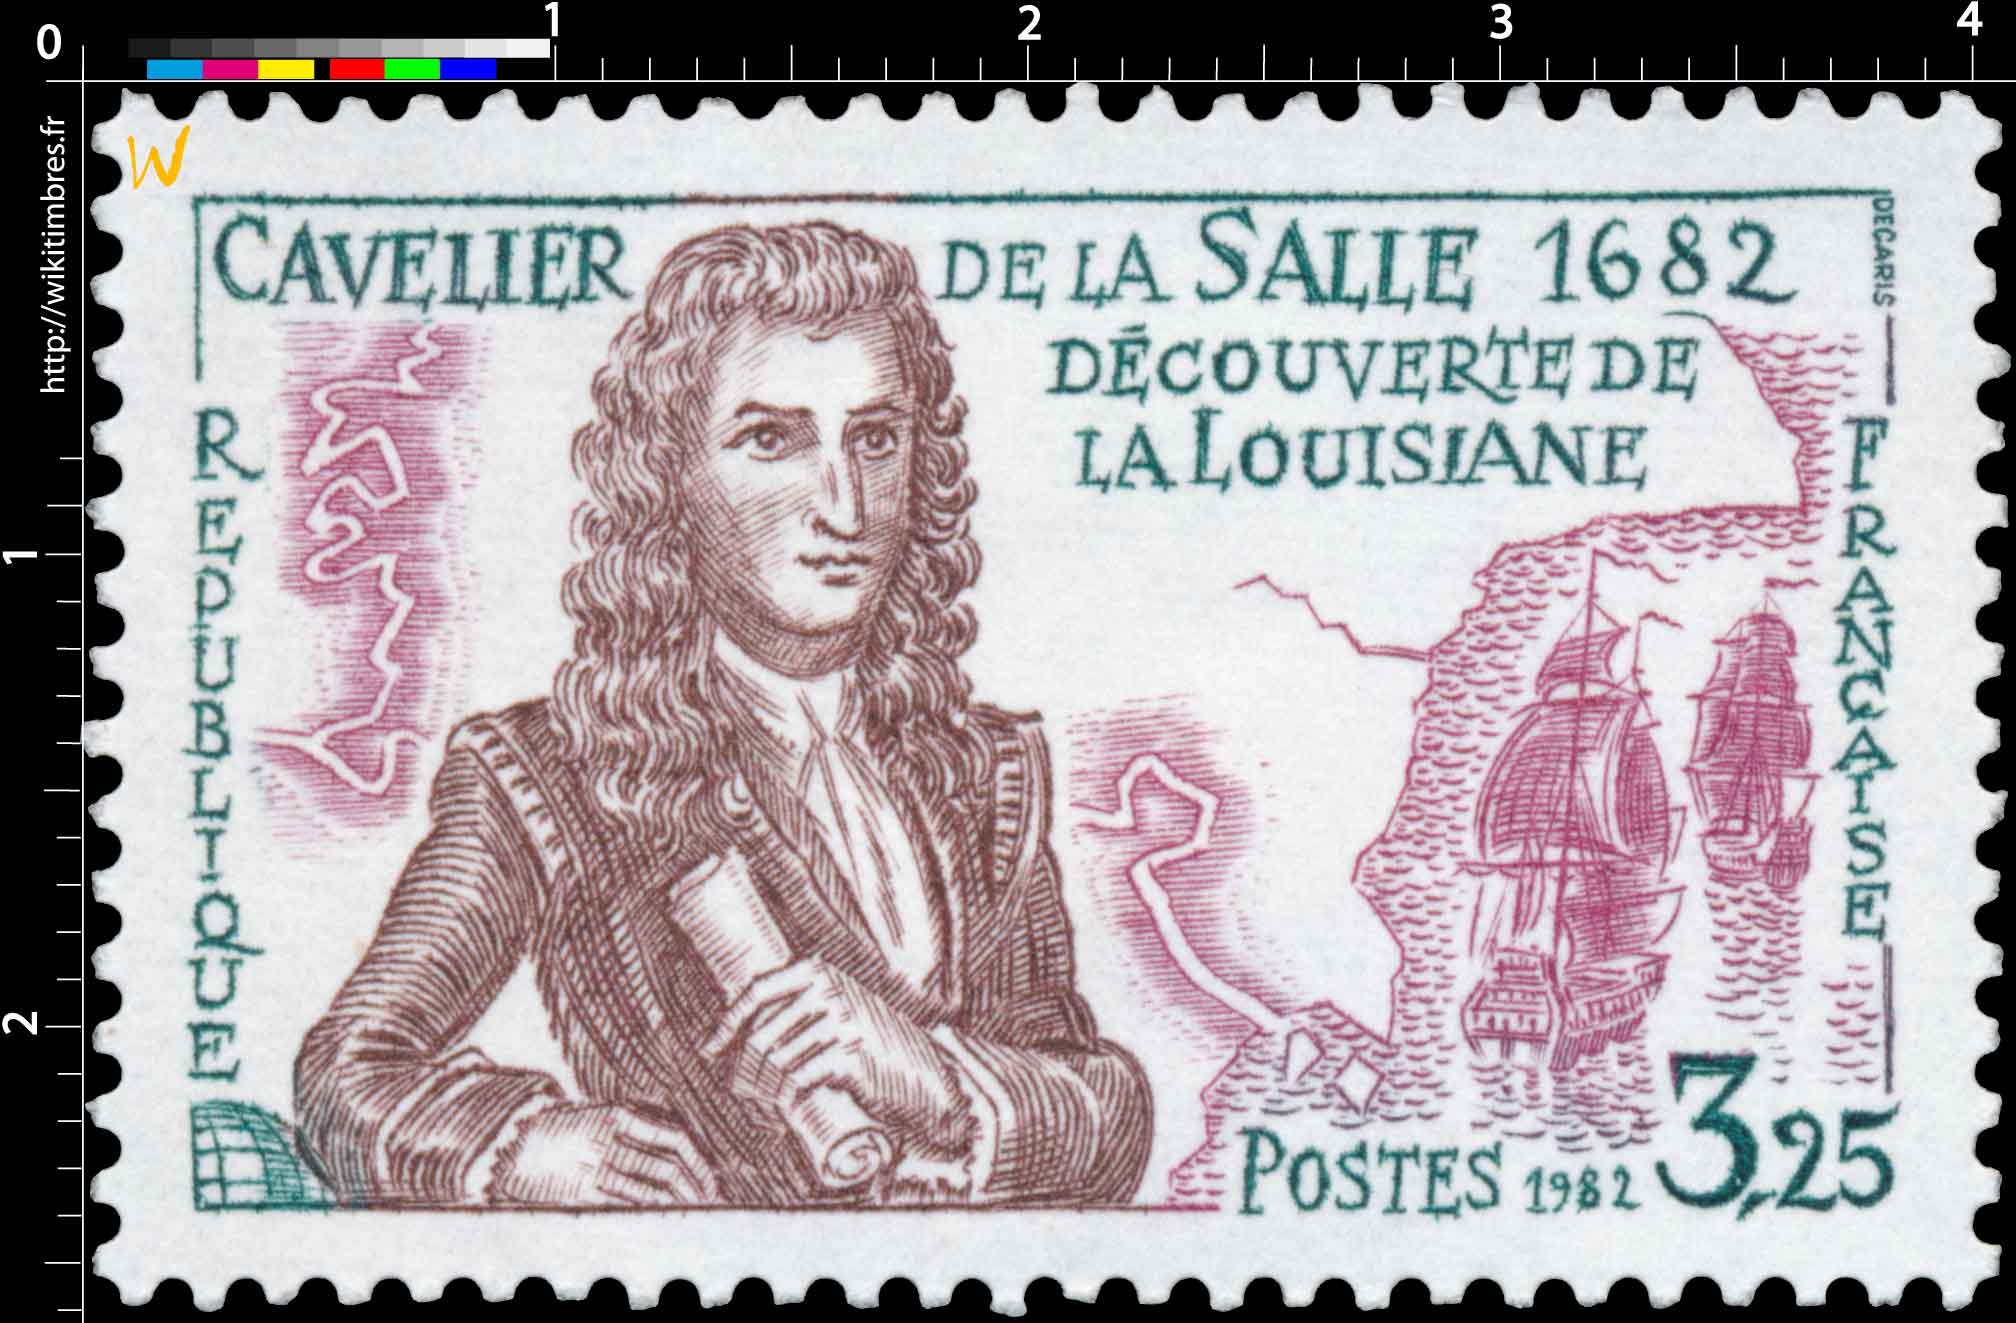 1982 CAVELIER DE LA SALLE 1682 DÉCOUVERTE DE LA LOUISIANE